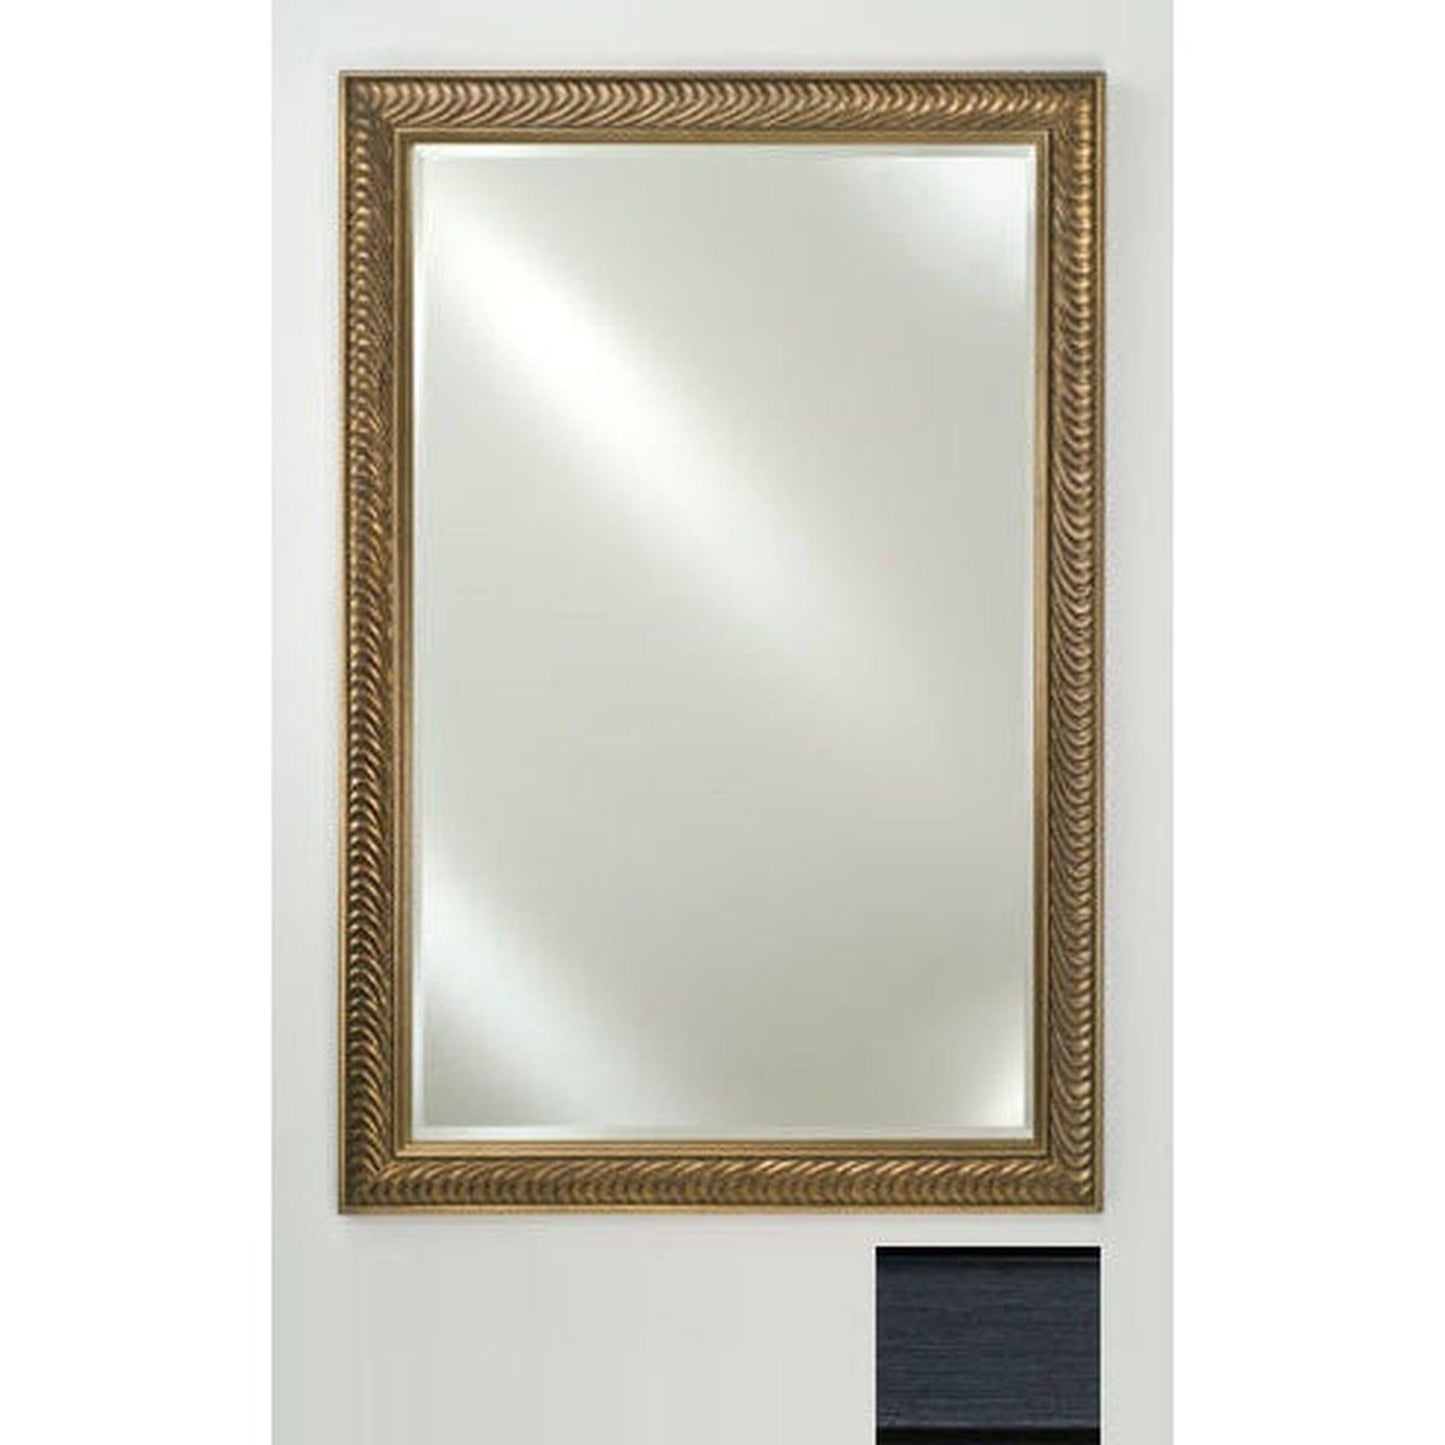 Afina Signature 20" x 26" Soho Brushed Black Framed Mirror With Beveled Edge